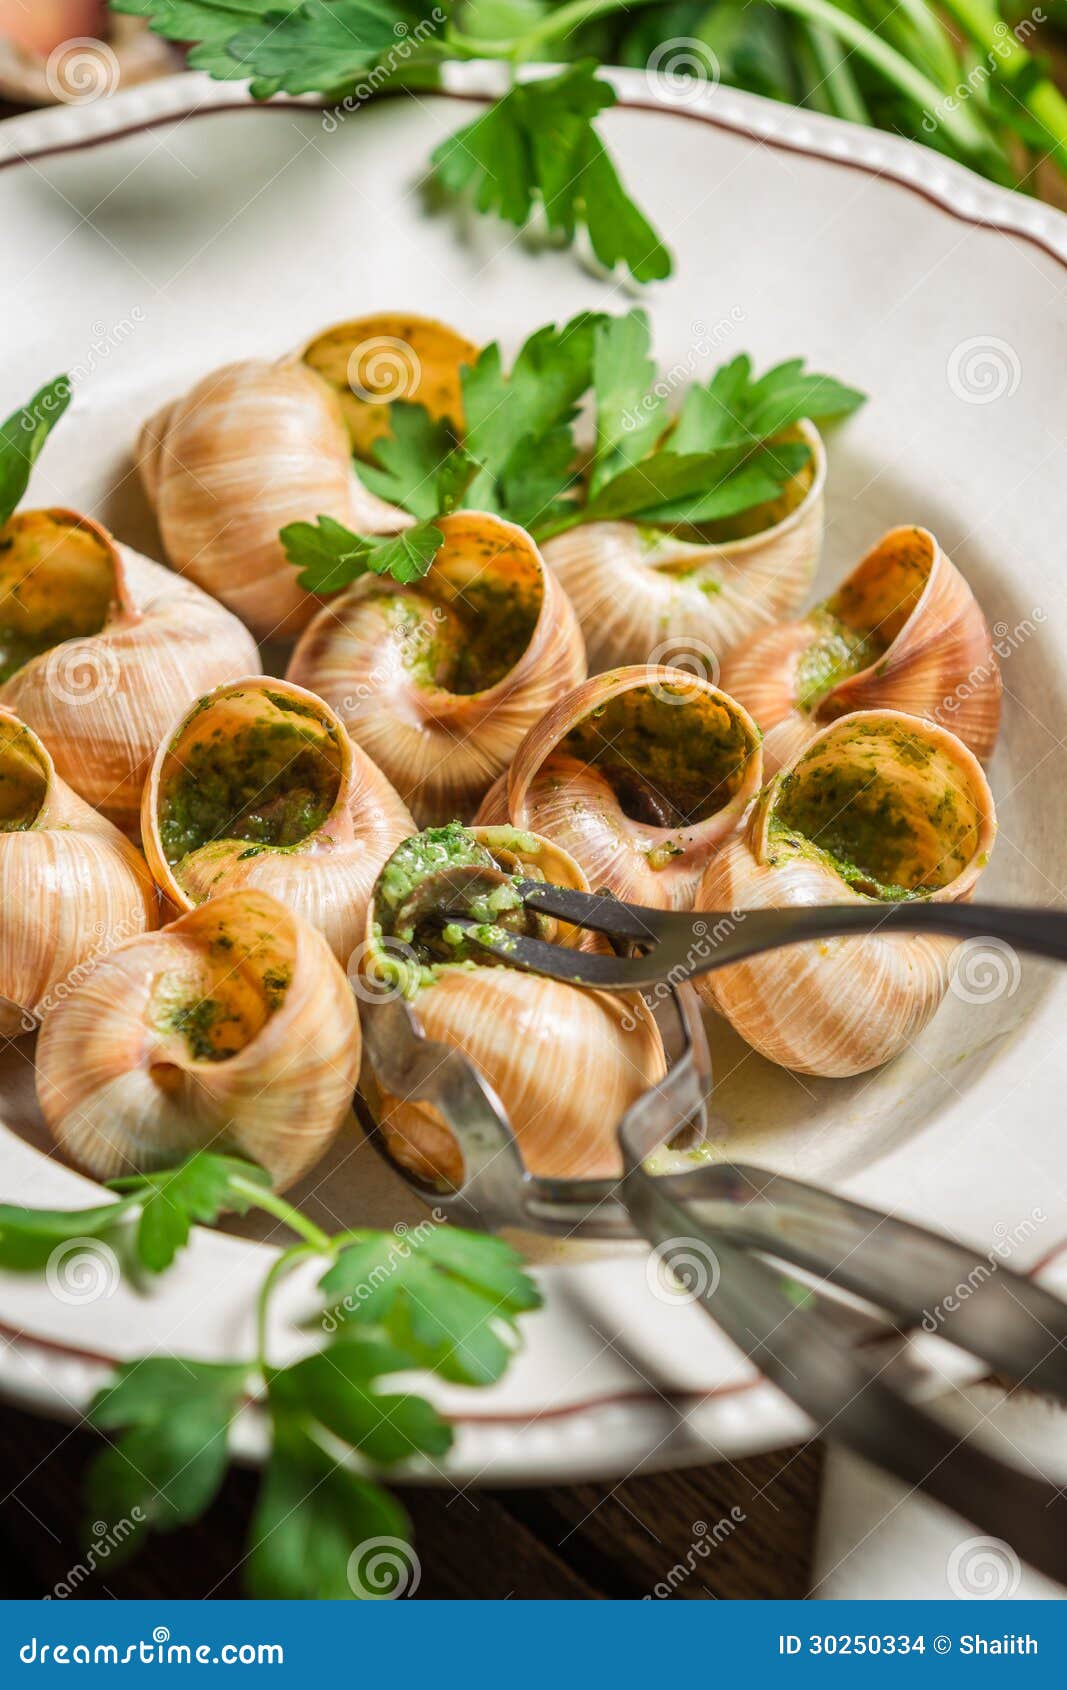 日本冷的蜗牛盘 库存照片. 图片 包括有 贝类, 海鲜, 食物, 美食, 新鲜, 异乎寻常, 日语, 蜗牛 - 37444288